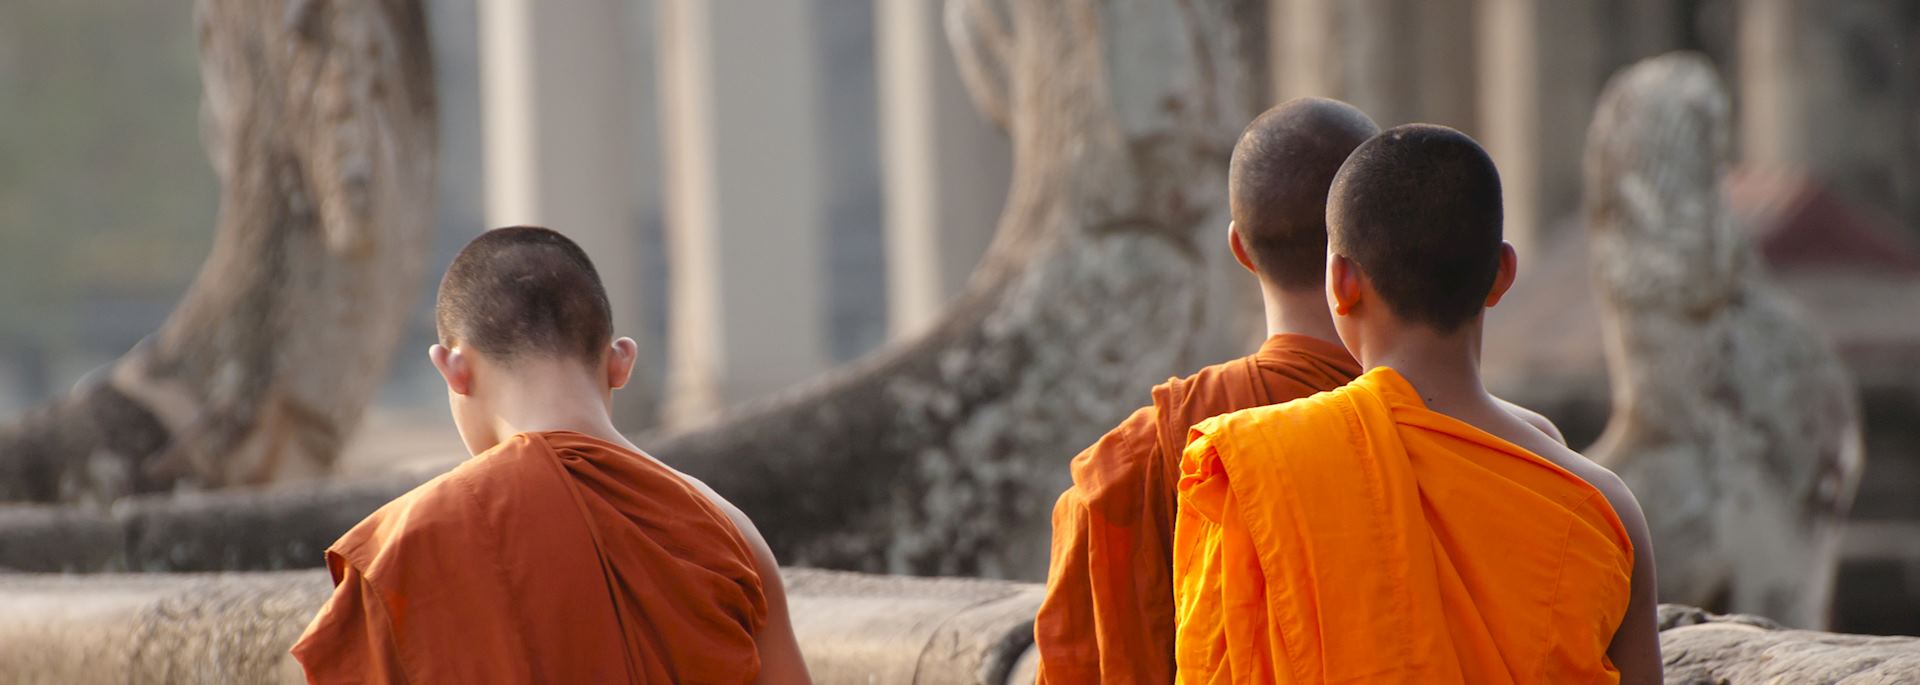 Monks, Angkor Wat